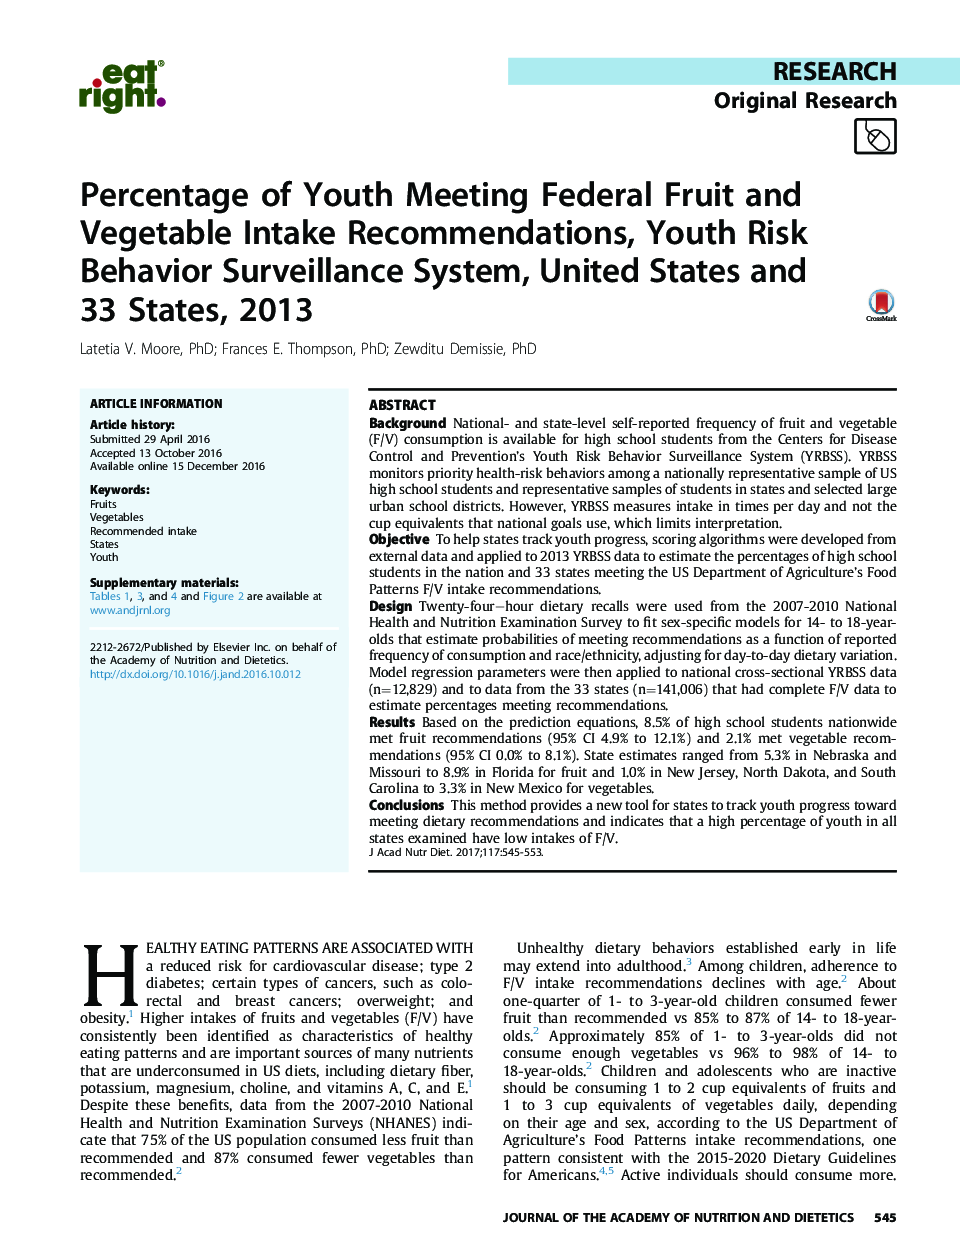 درصد برنامه های توصیه شده برای مصرف کنندگان میوه ها و سبزیجات، سیستم نظارت بر رفتار جوانان ریسک، ایالات متحده و 33 کشور، 2013 